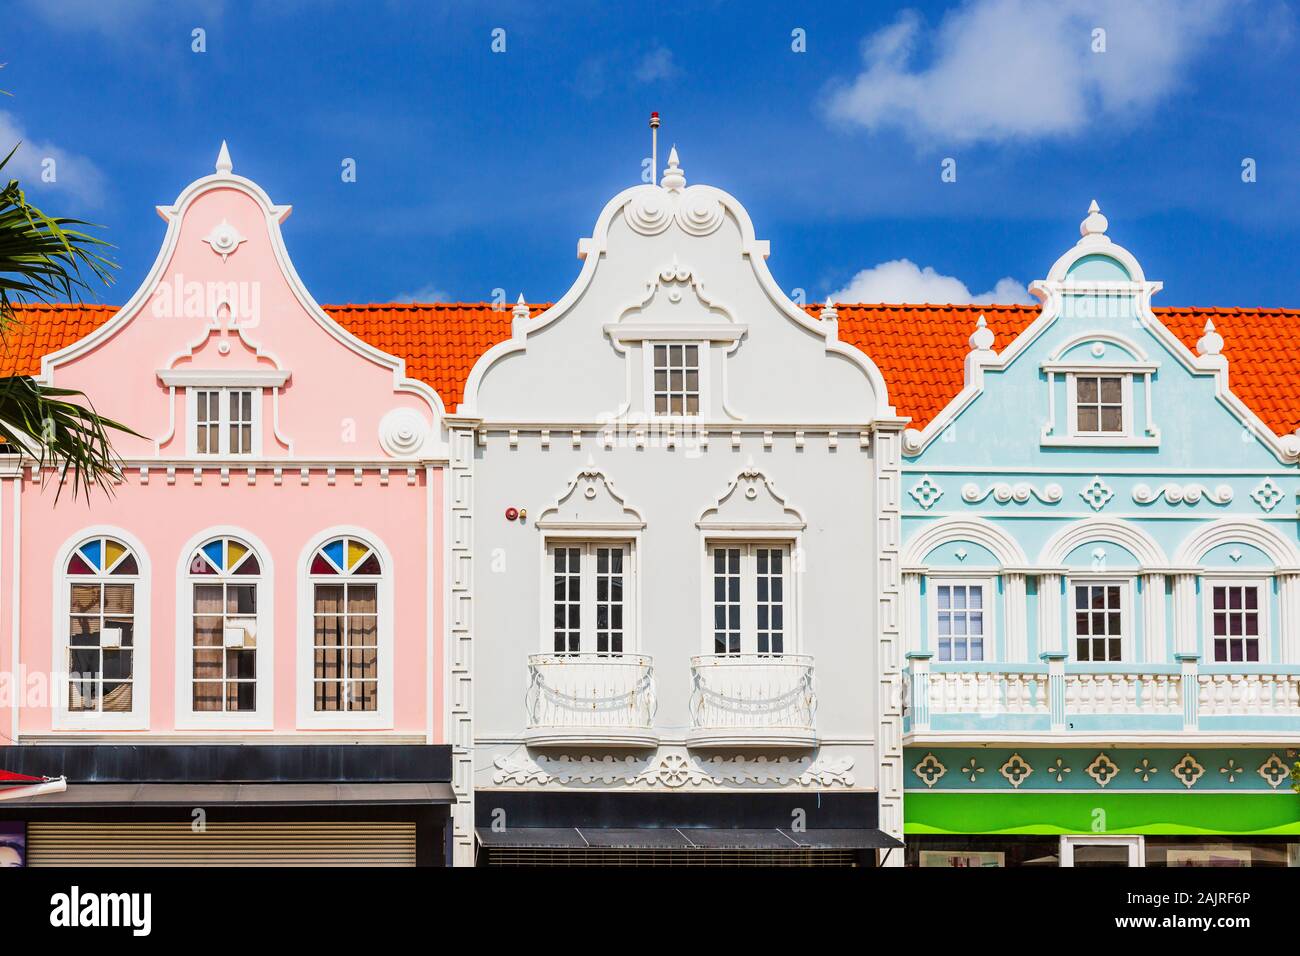 Aruba, Antille olandesi. Dettagli della città vecchia architettura. Foto Stock